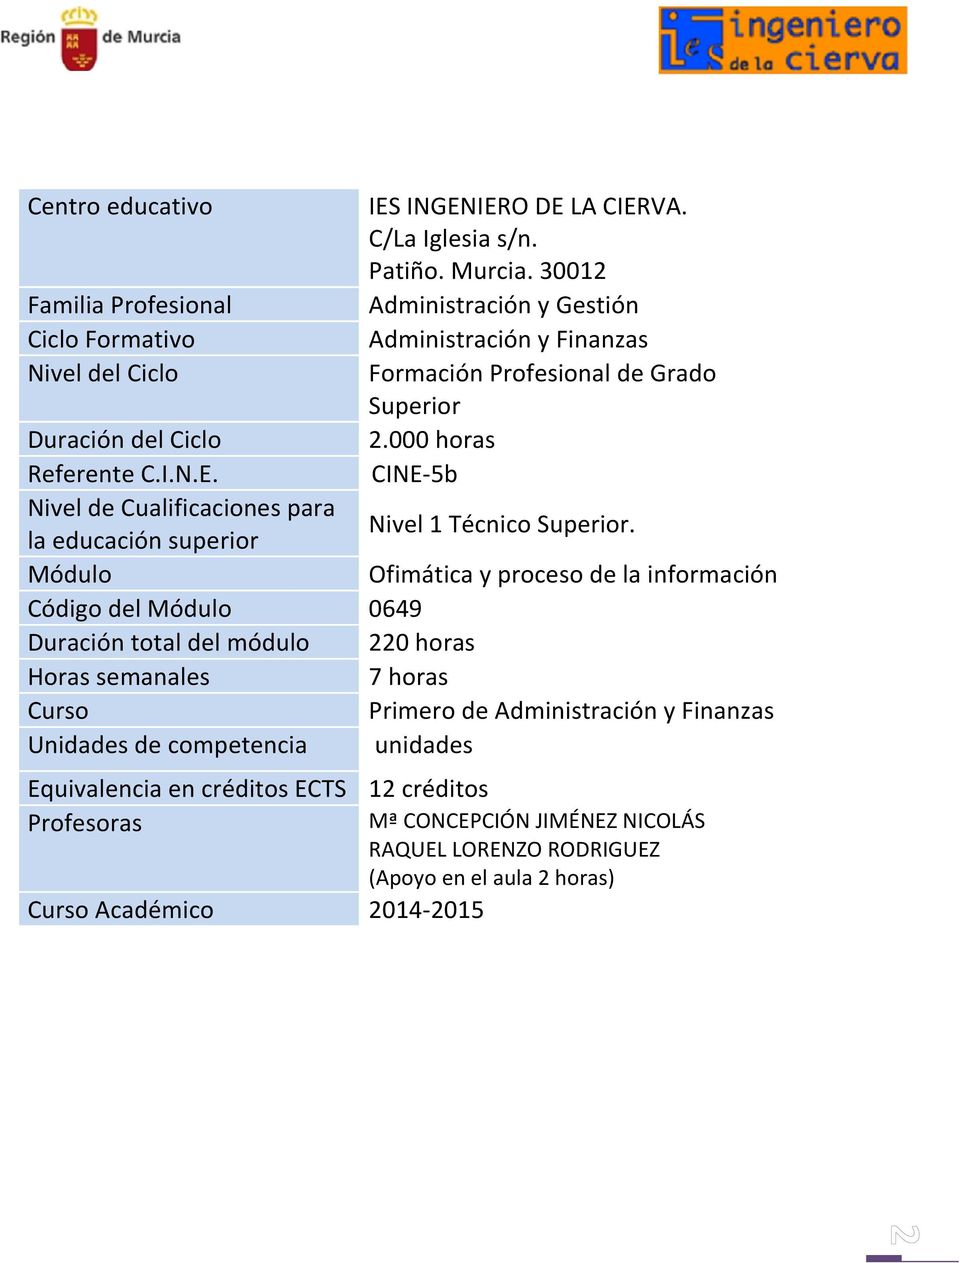 5b Duración del Ciclo Referente C.I.N.E. Nivel de Cualificaciones para la educación superior Nivel 1 Técnico Superior.